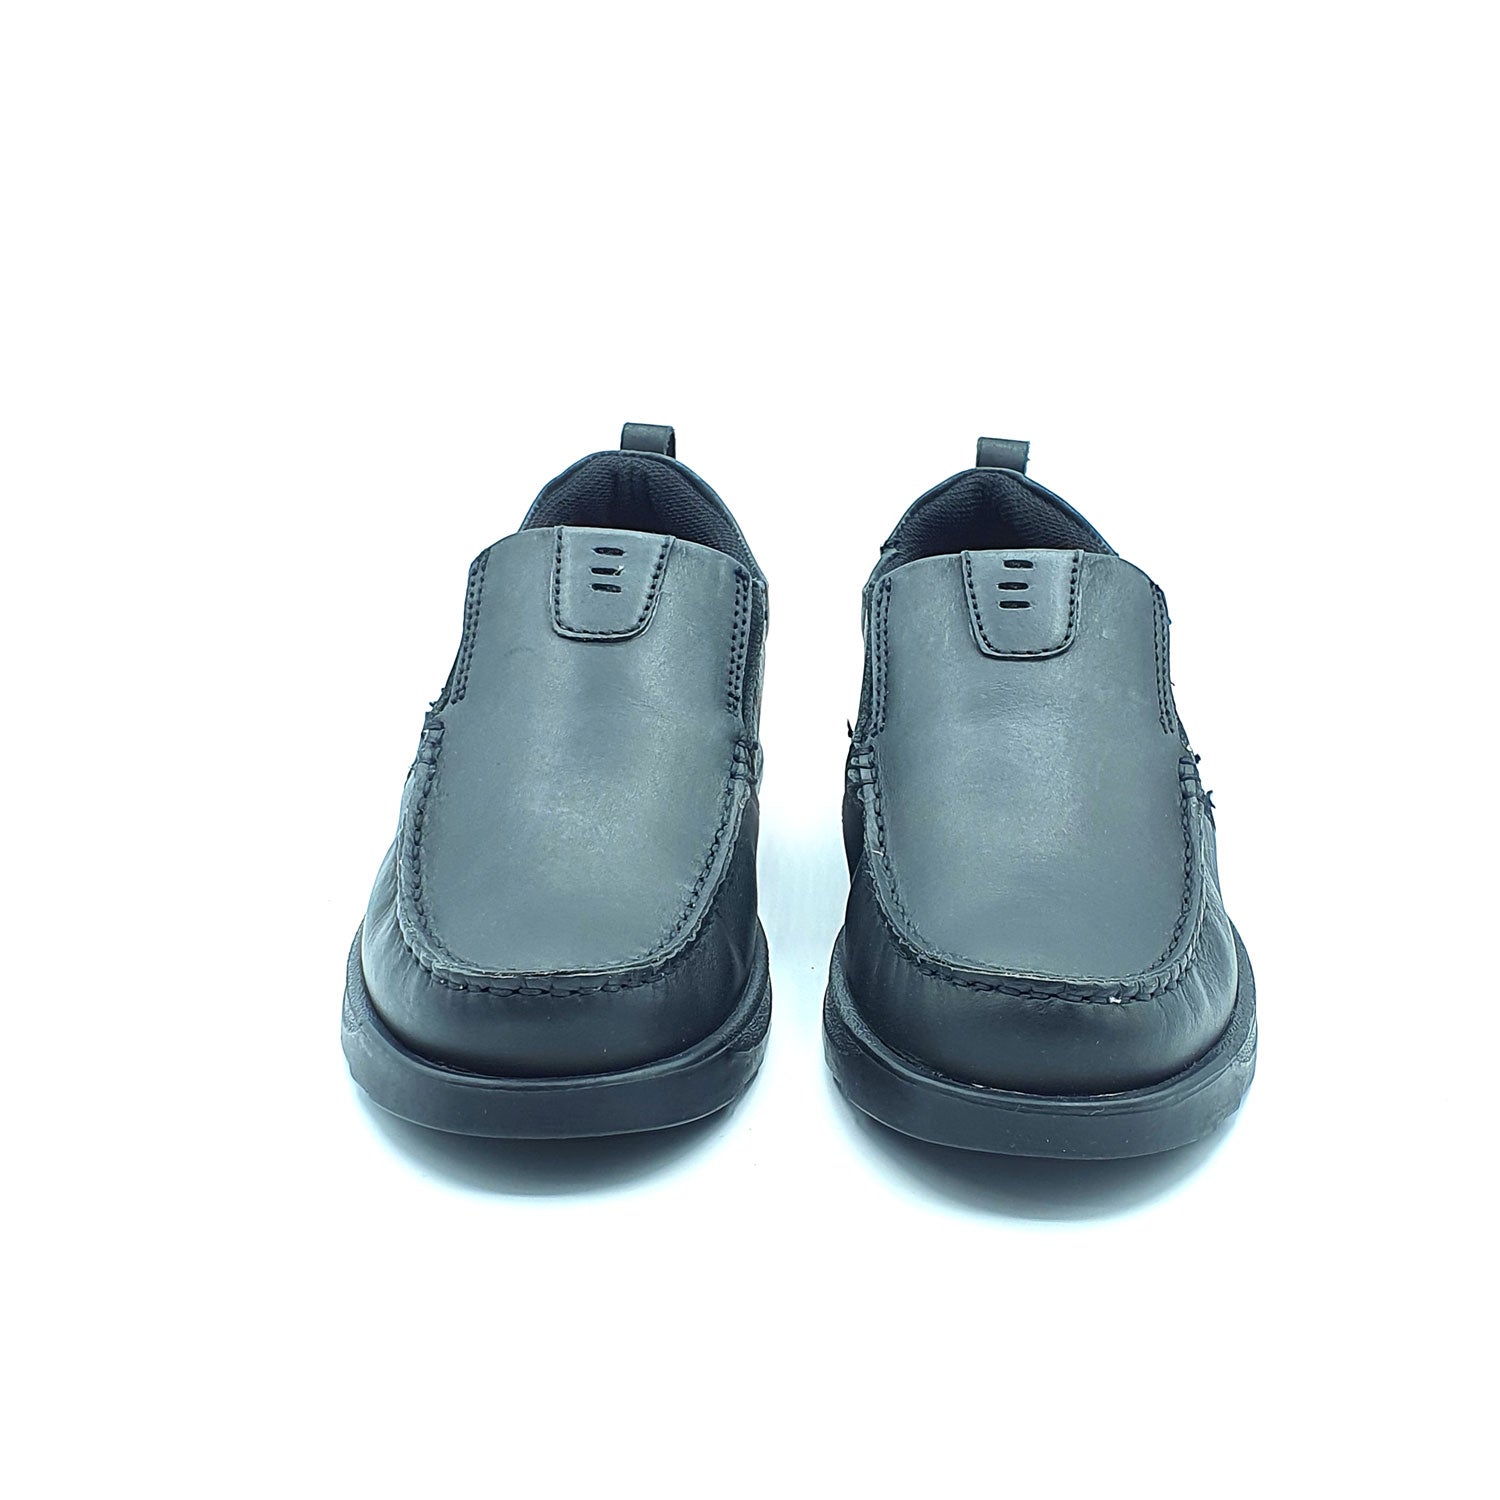 Dubarry Karter Junior Slip On Av8 Shoe - Black 2 Shaws Department Stores